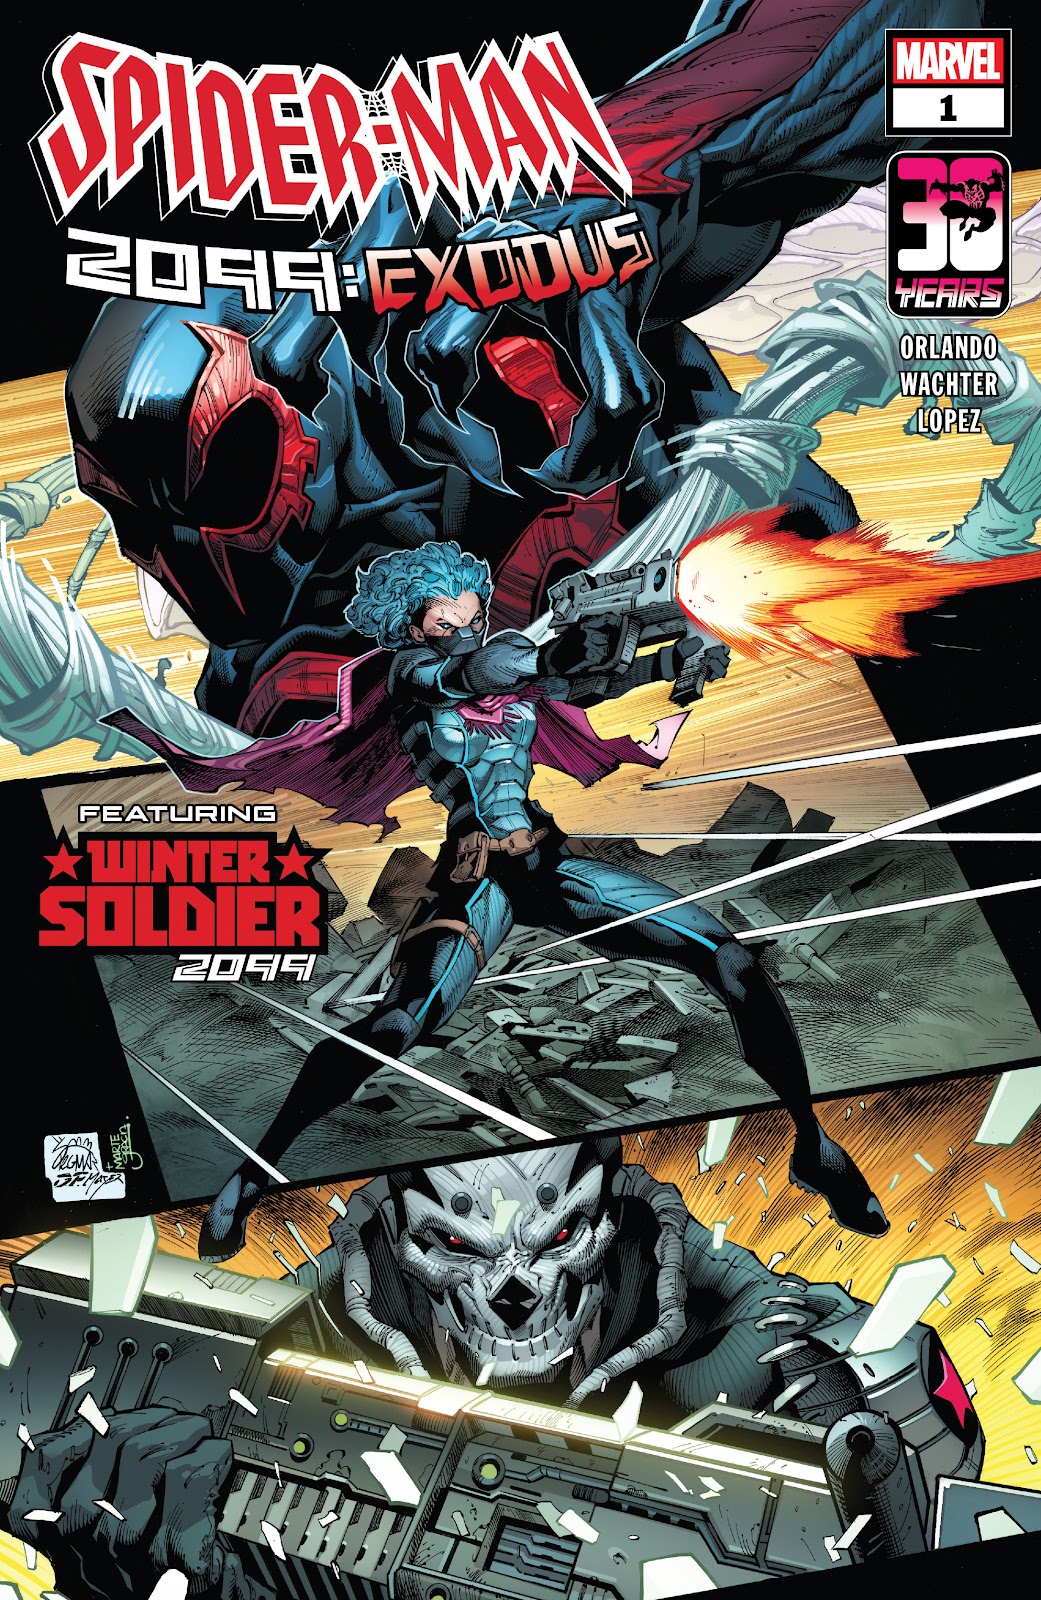 Spider-Man 2099: Exodus Alpha issue 1 - Page 1